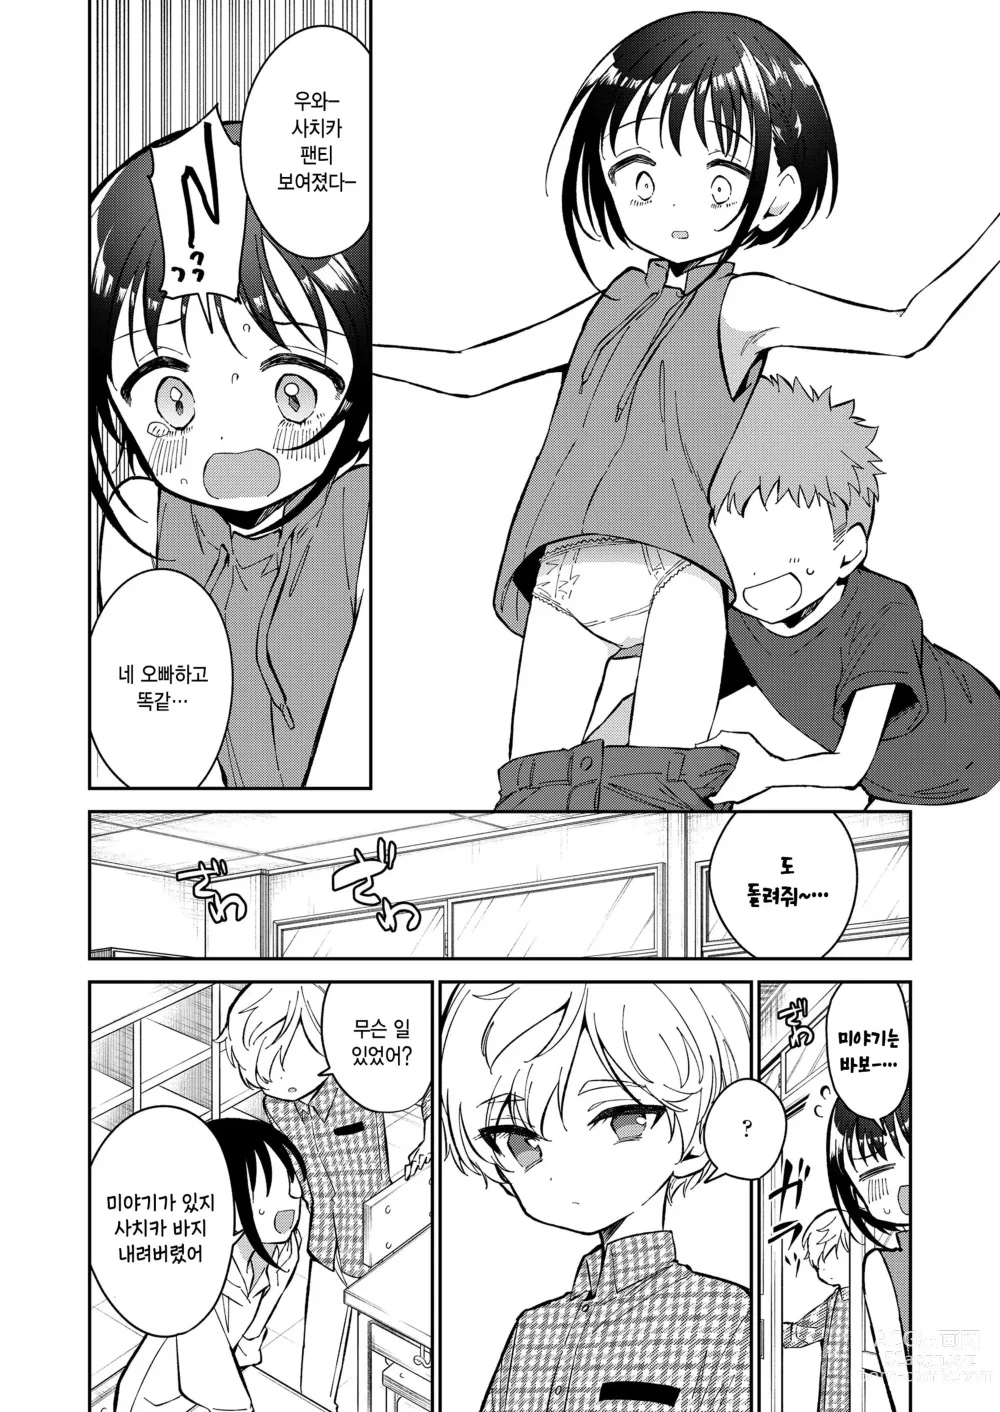 Page 38 of manga Watashi ga iki wo shiteru basho